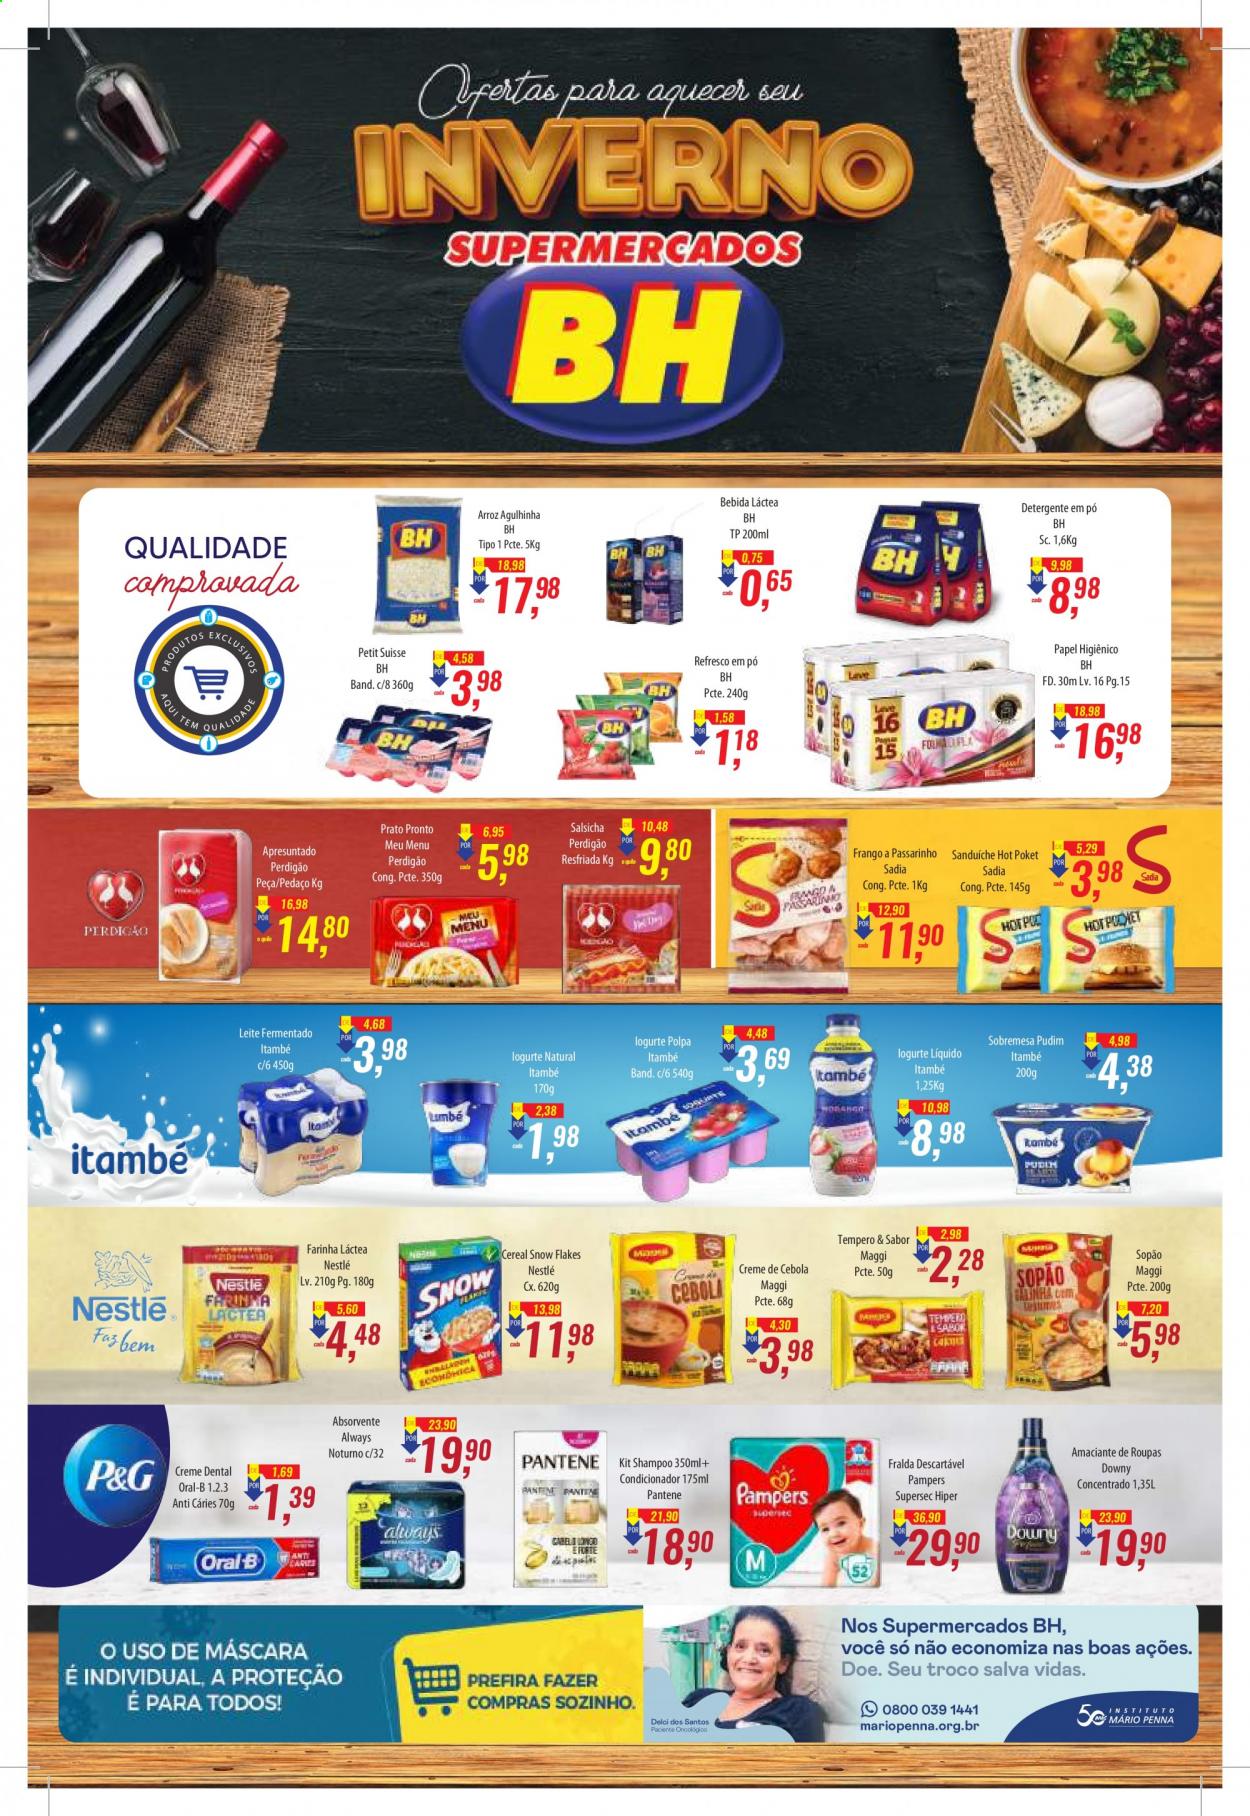 Encarte Supermercados BH  - 02.07.2021 - 15.07.2021.